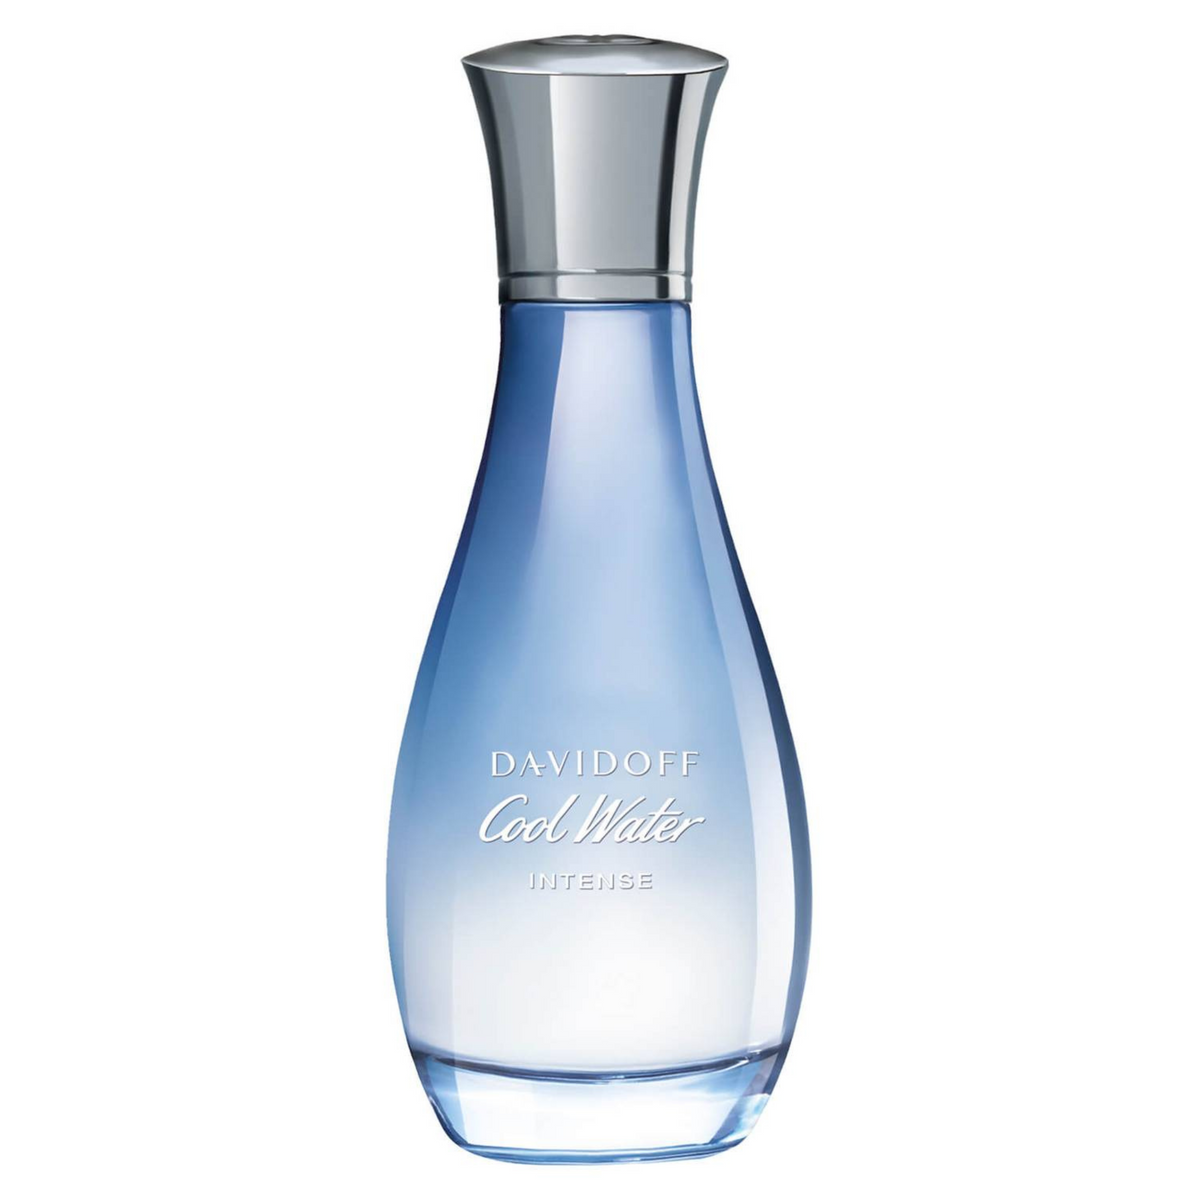 Cool Water Intense Woman - Eau de Parfum| DAVIDOFF